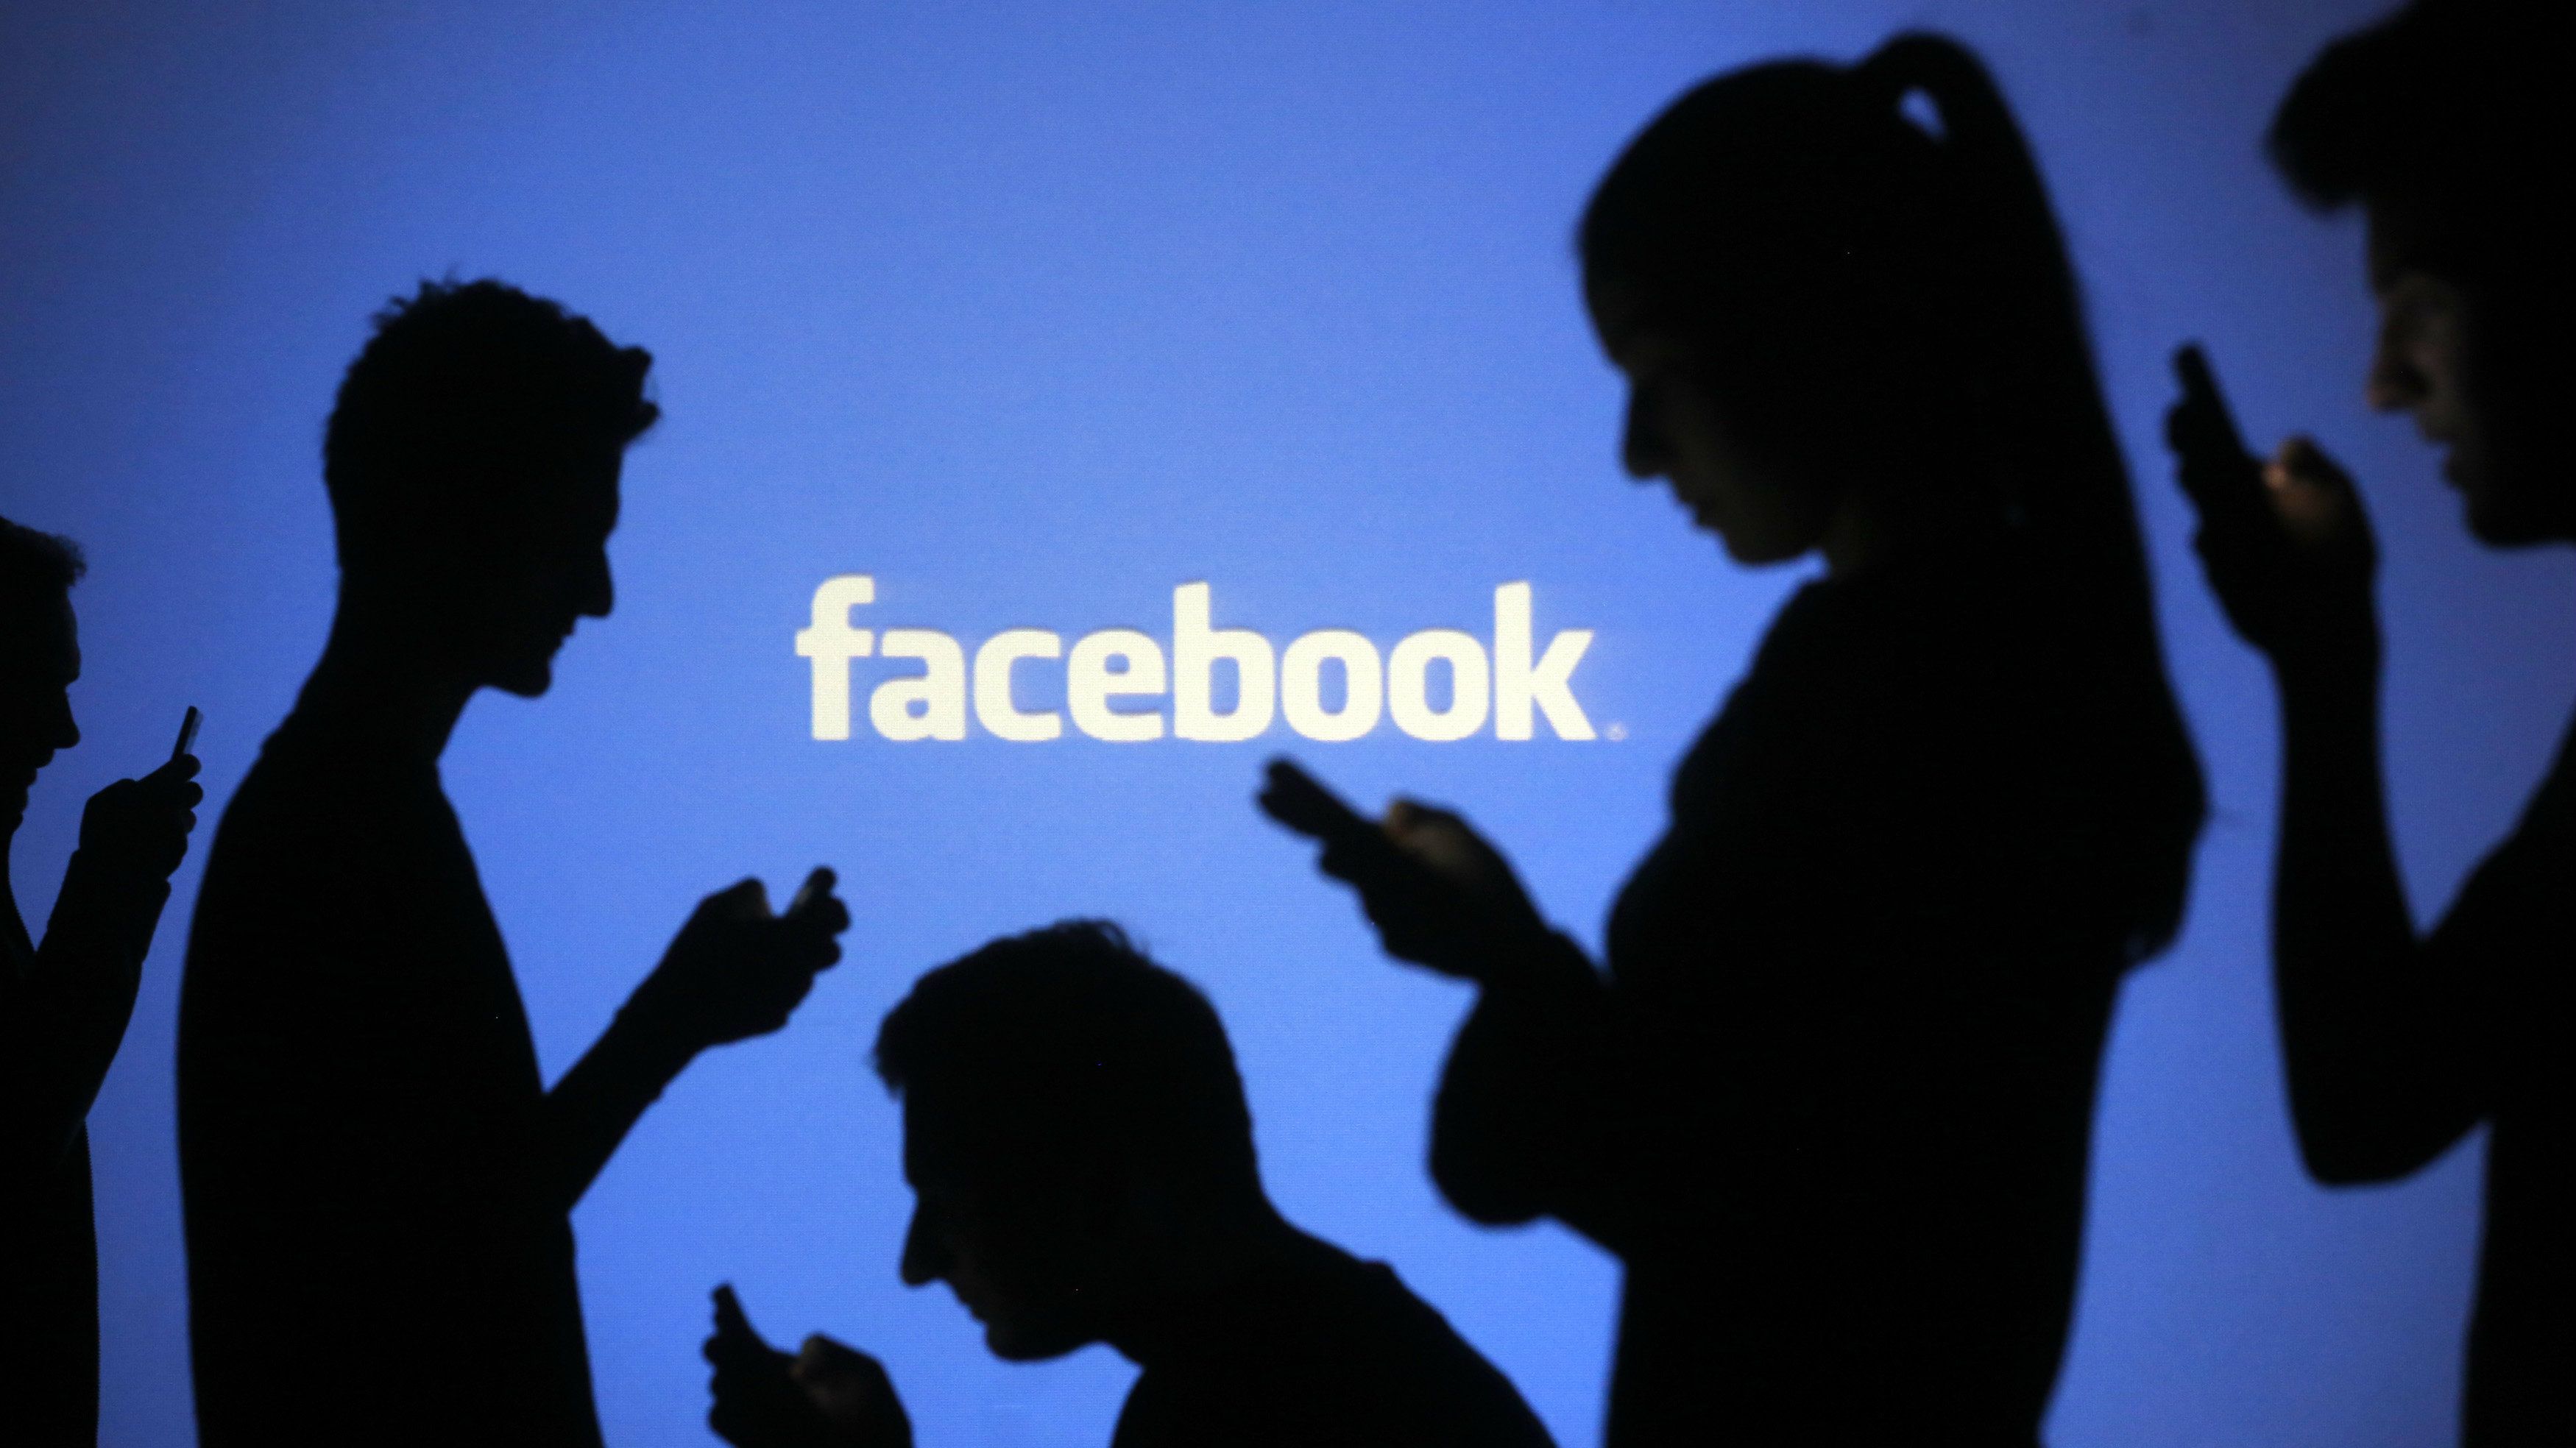 Facebook’tan data paylaşımı açıklaması